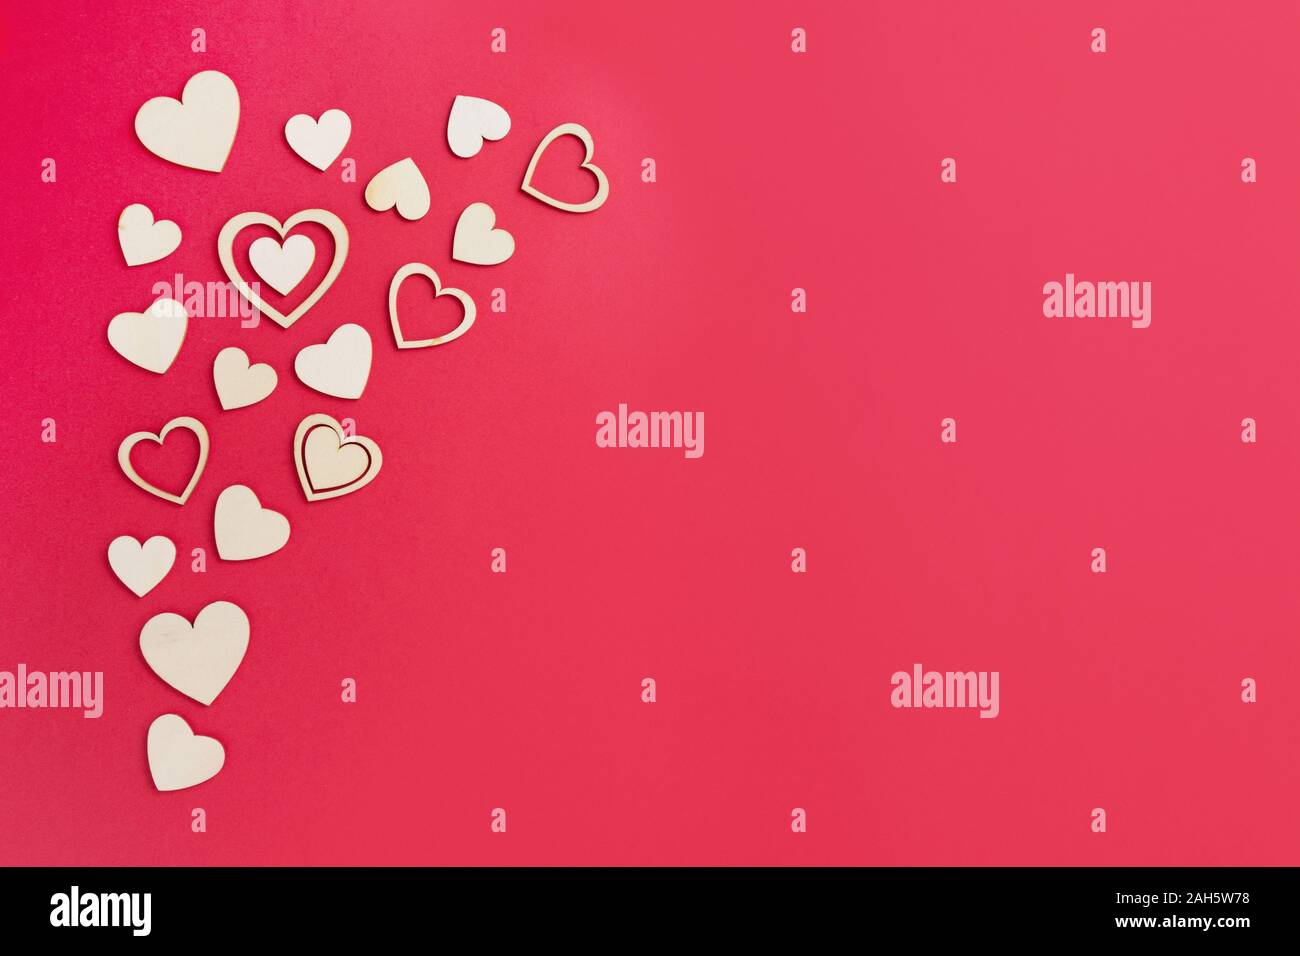 Holz- Herzen auf dem hellen roten Hintergrund. Zusammenfassung Hintergrund mit hölzernen Formen. Valentinstag, Muttertag, Geburtstag Grußkarten, Einladung, Stockfoto